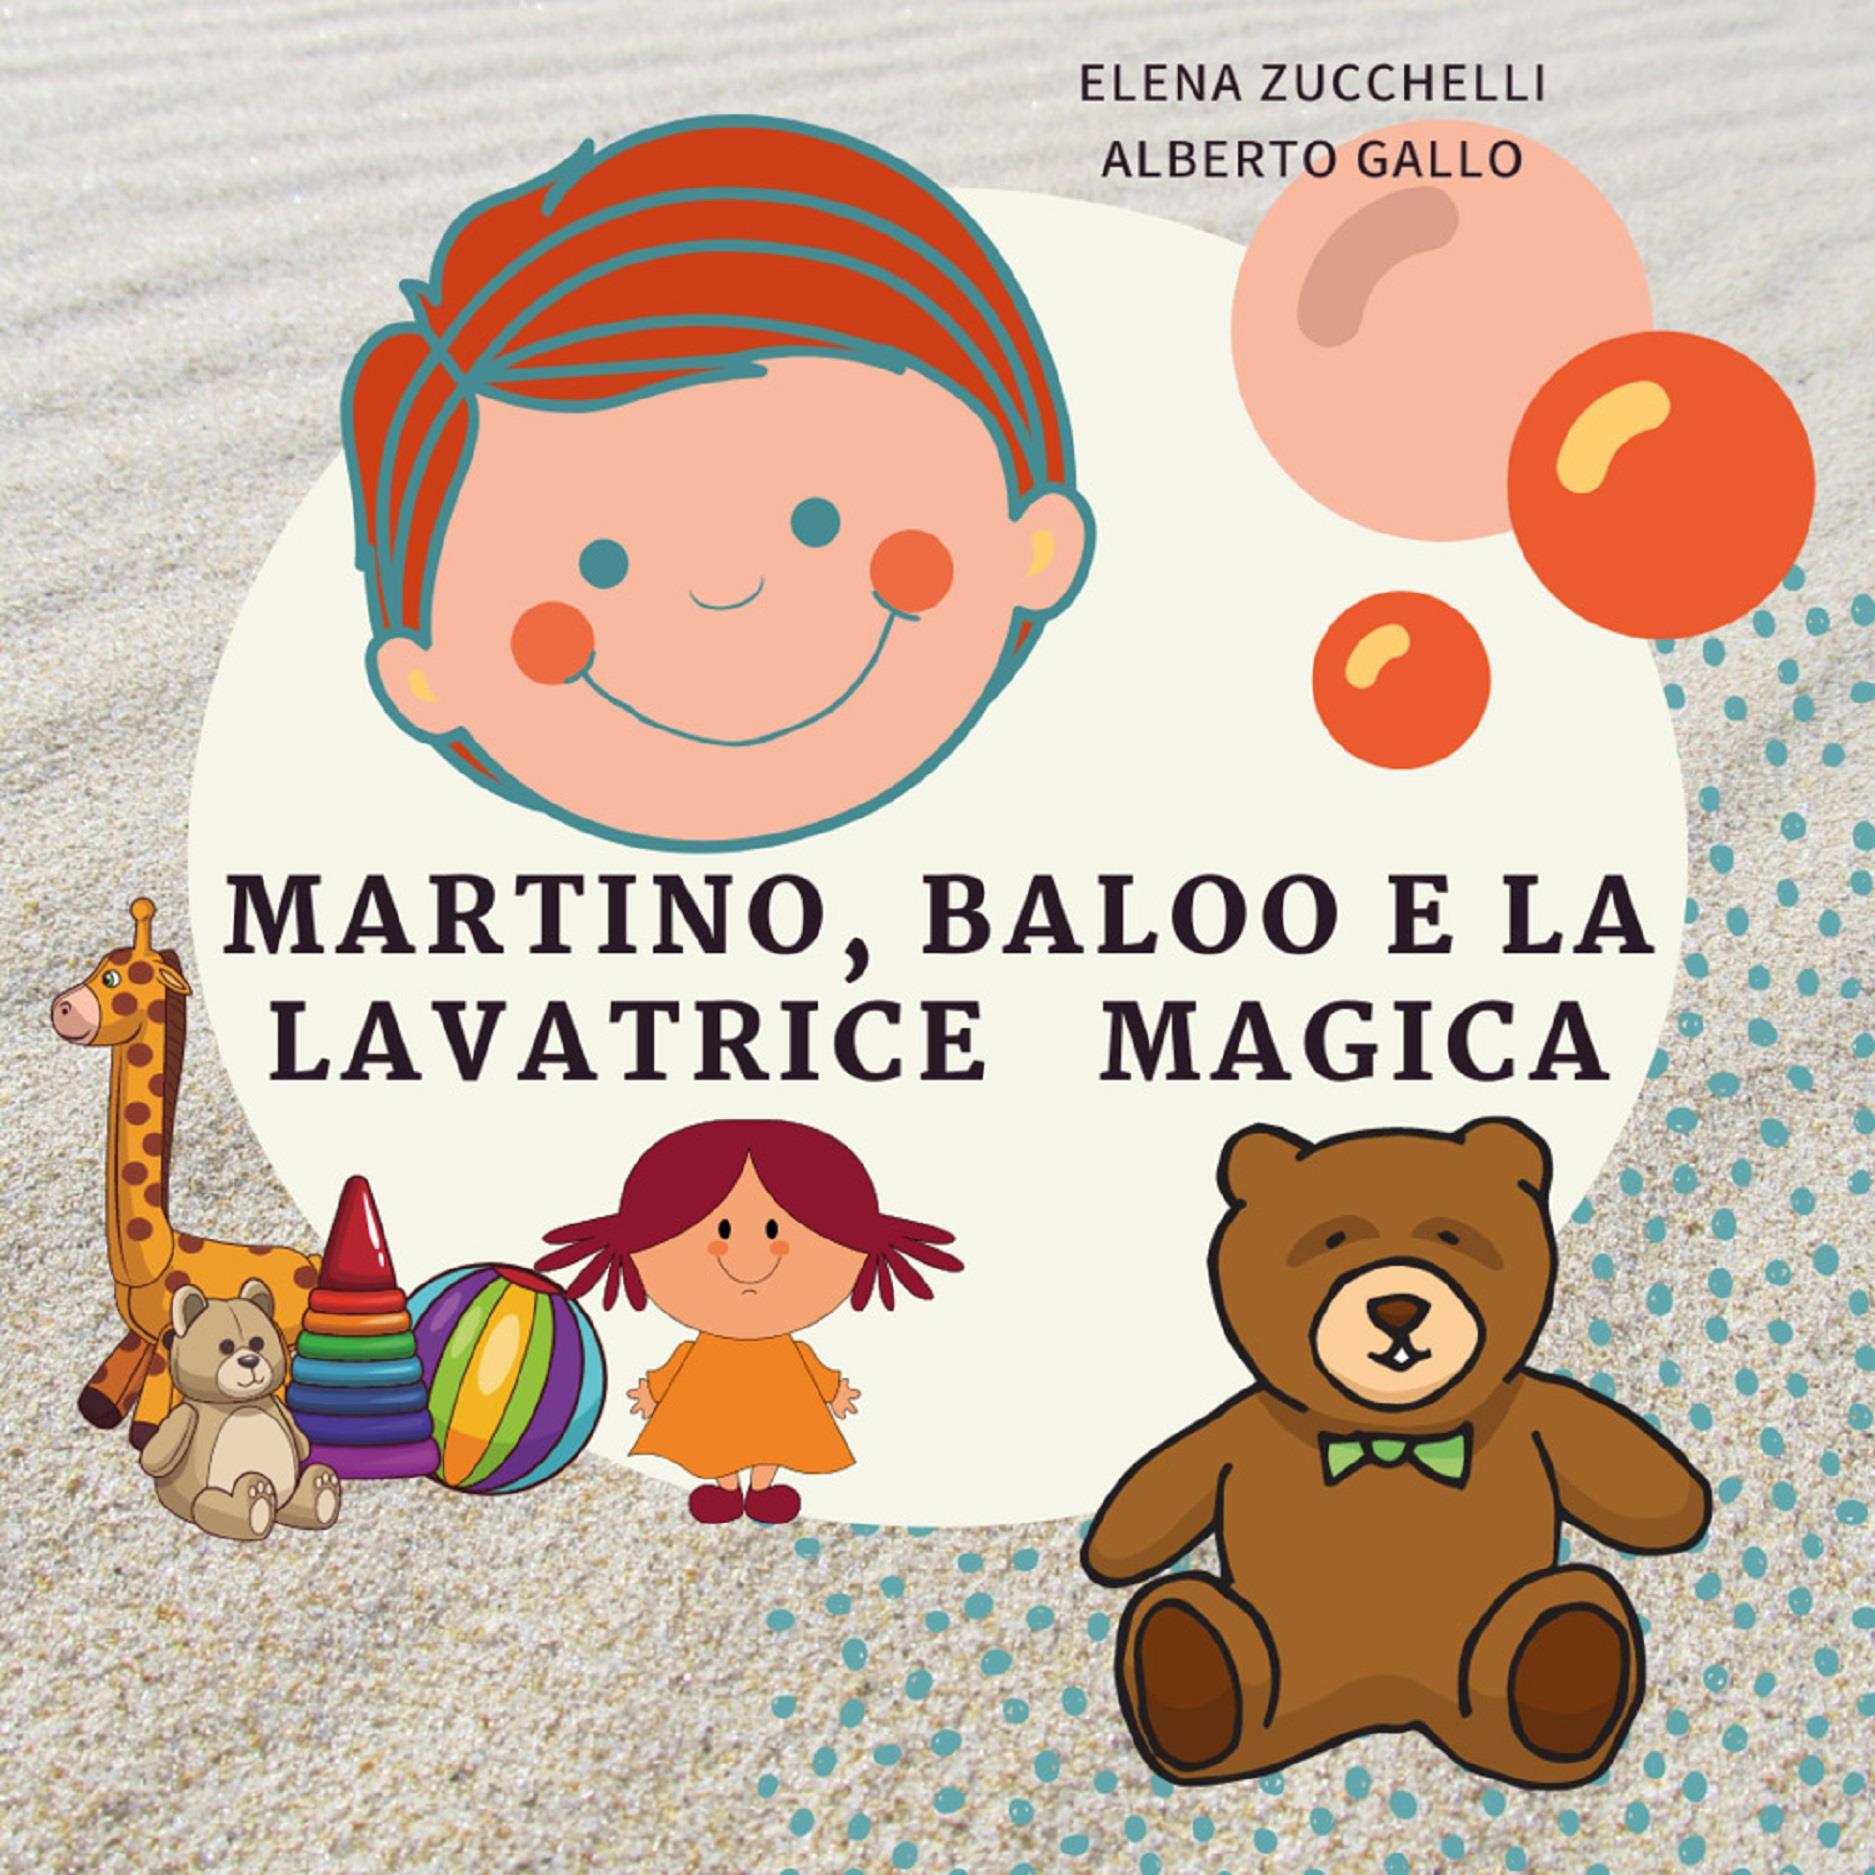 Martino, Baloo e la lavatrice magica